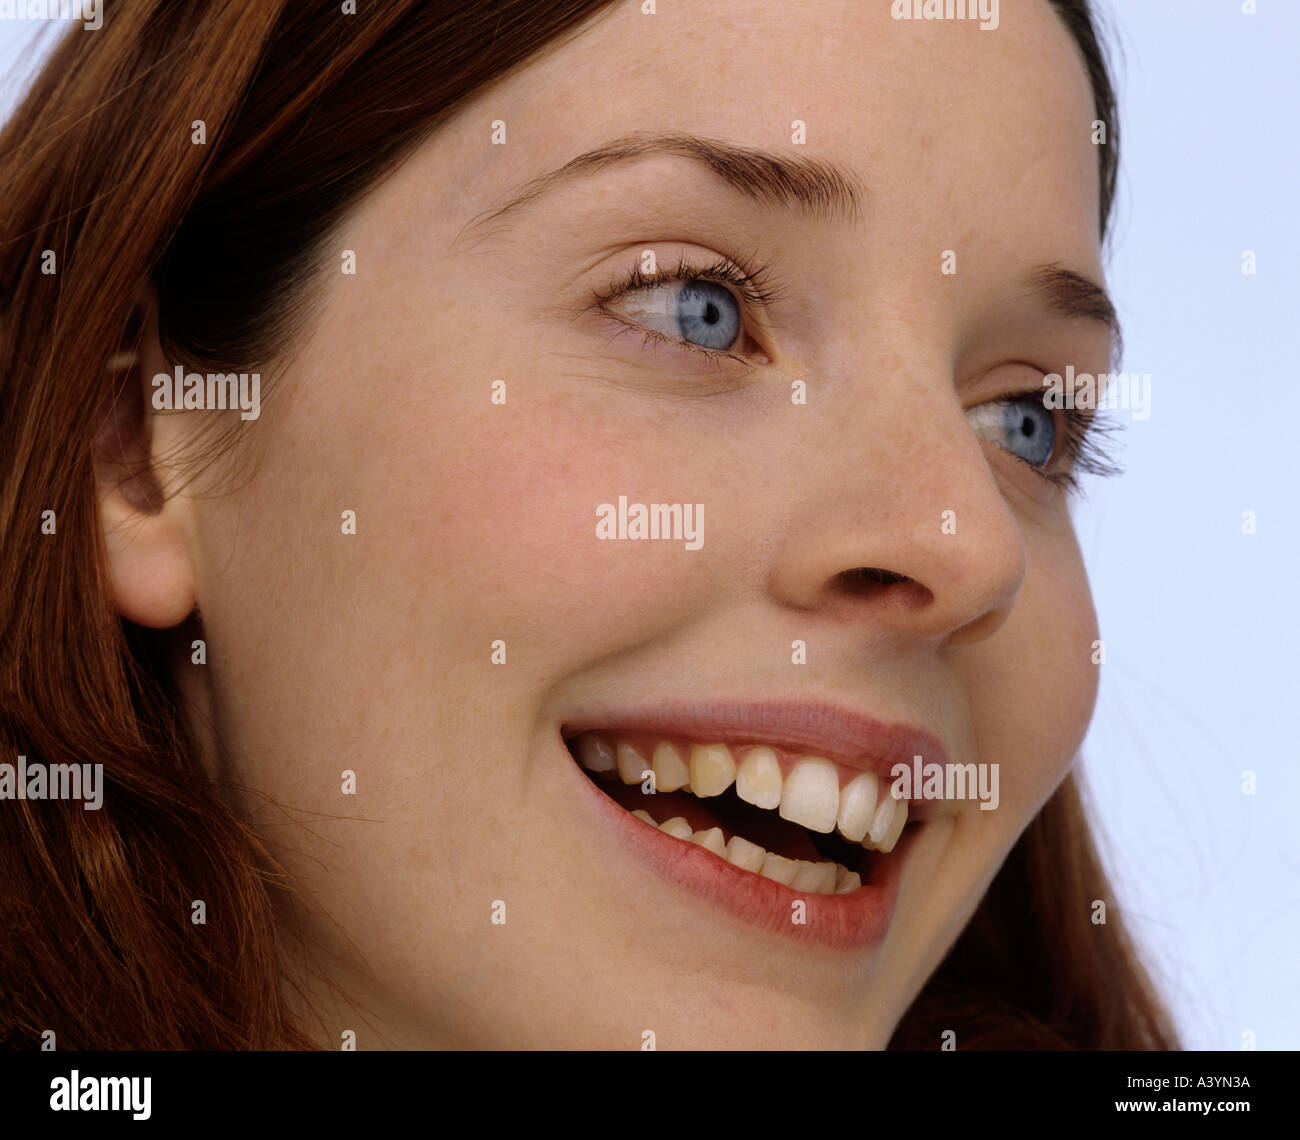 Profil von lächelnde junge Frau mit blauen Augen Stockfoto